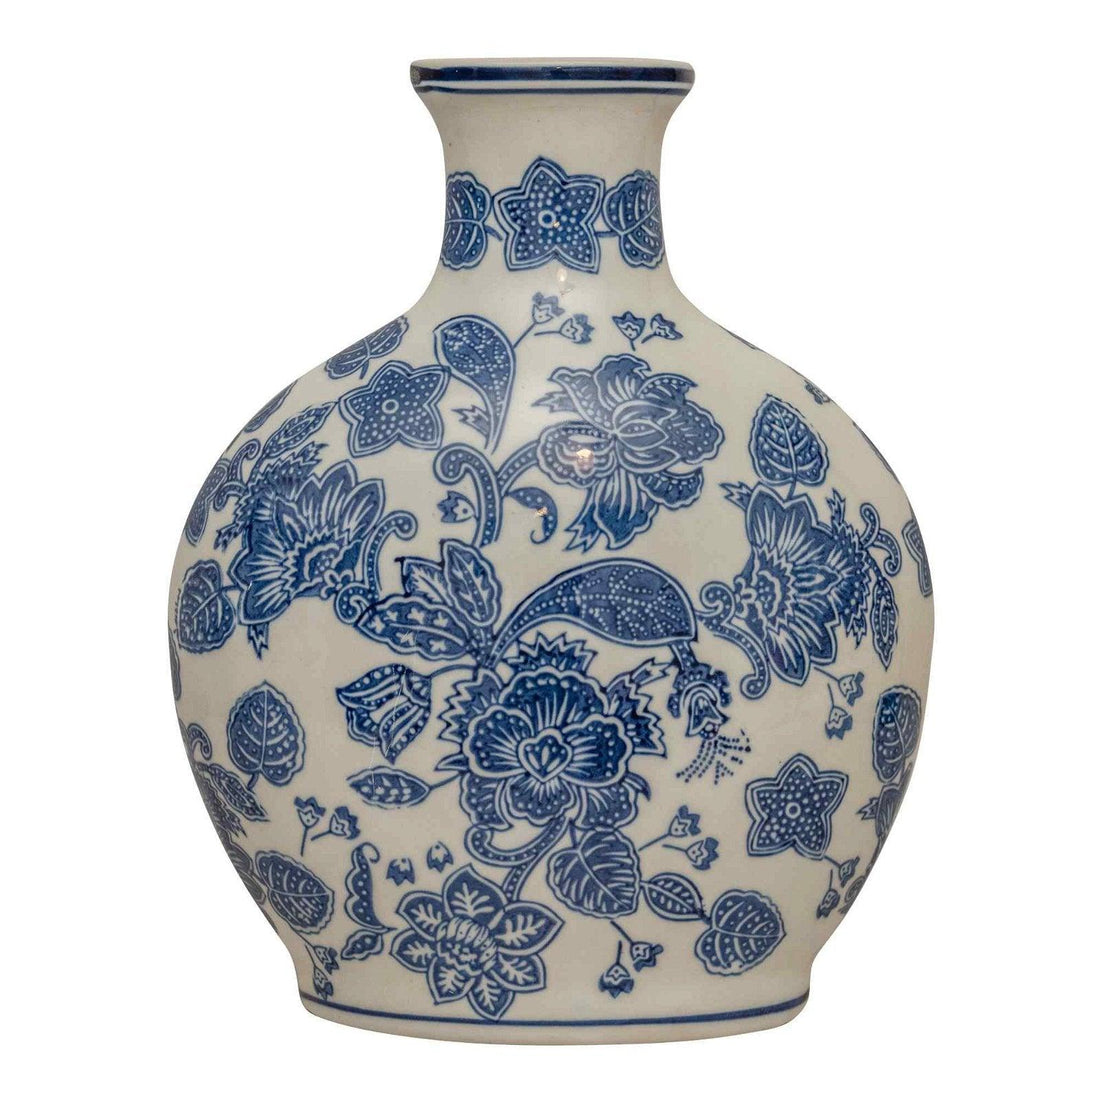 Anemone Blue & White Bottle Vase - £59.99 - Vases 